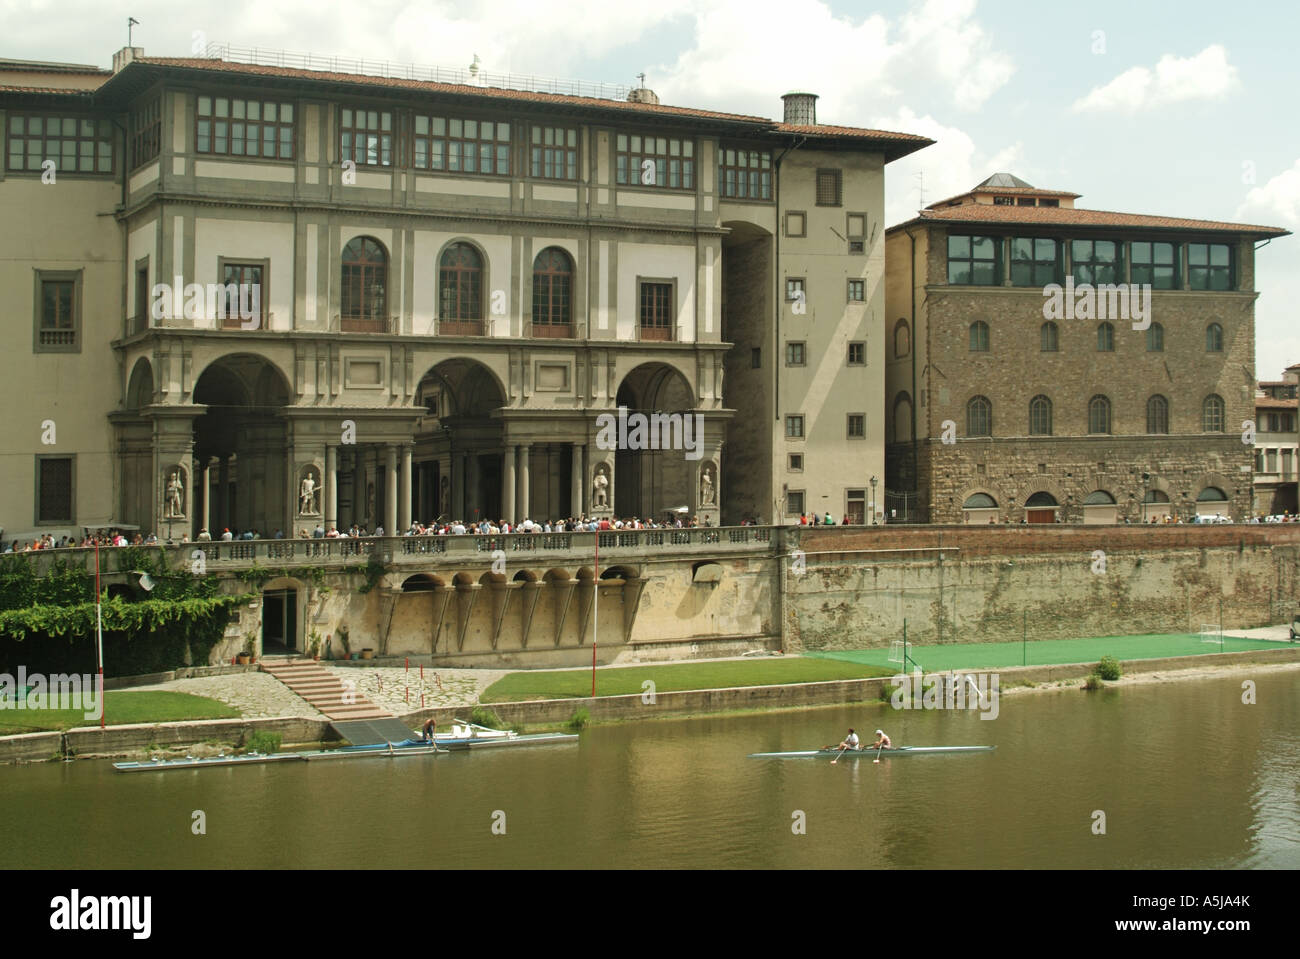 Galerie des Offices célèbre musée d'art italien sur Riverside rive nord du fleuve Arno à la plate-forme de lancement pour les rameurs Florence Toscane Italie Banque D'Images